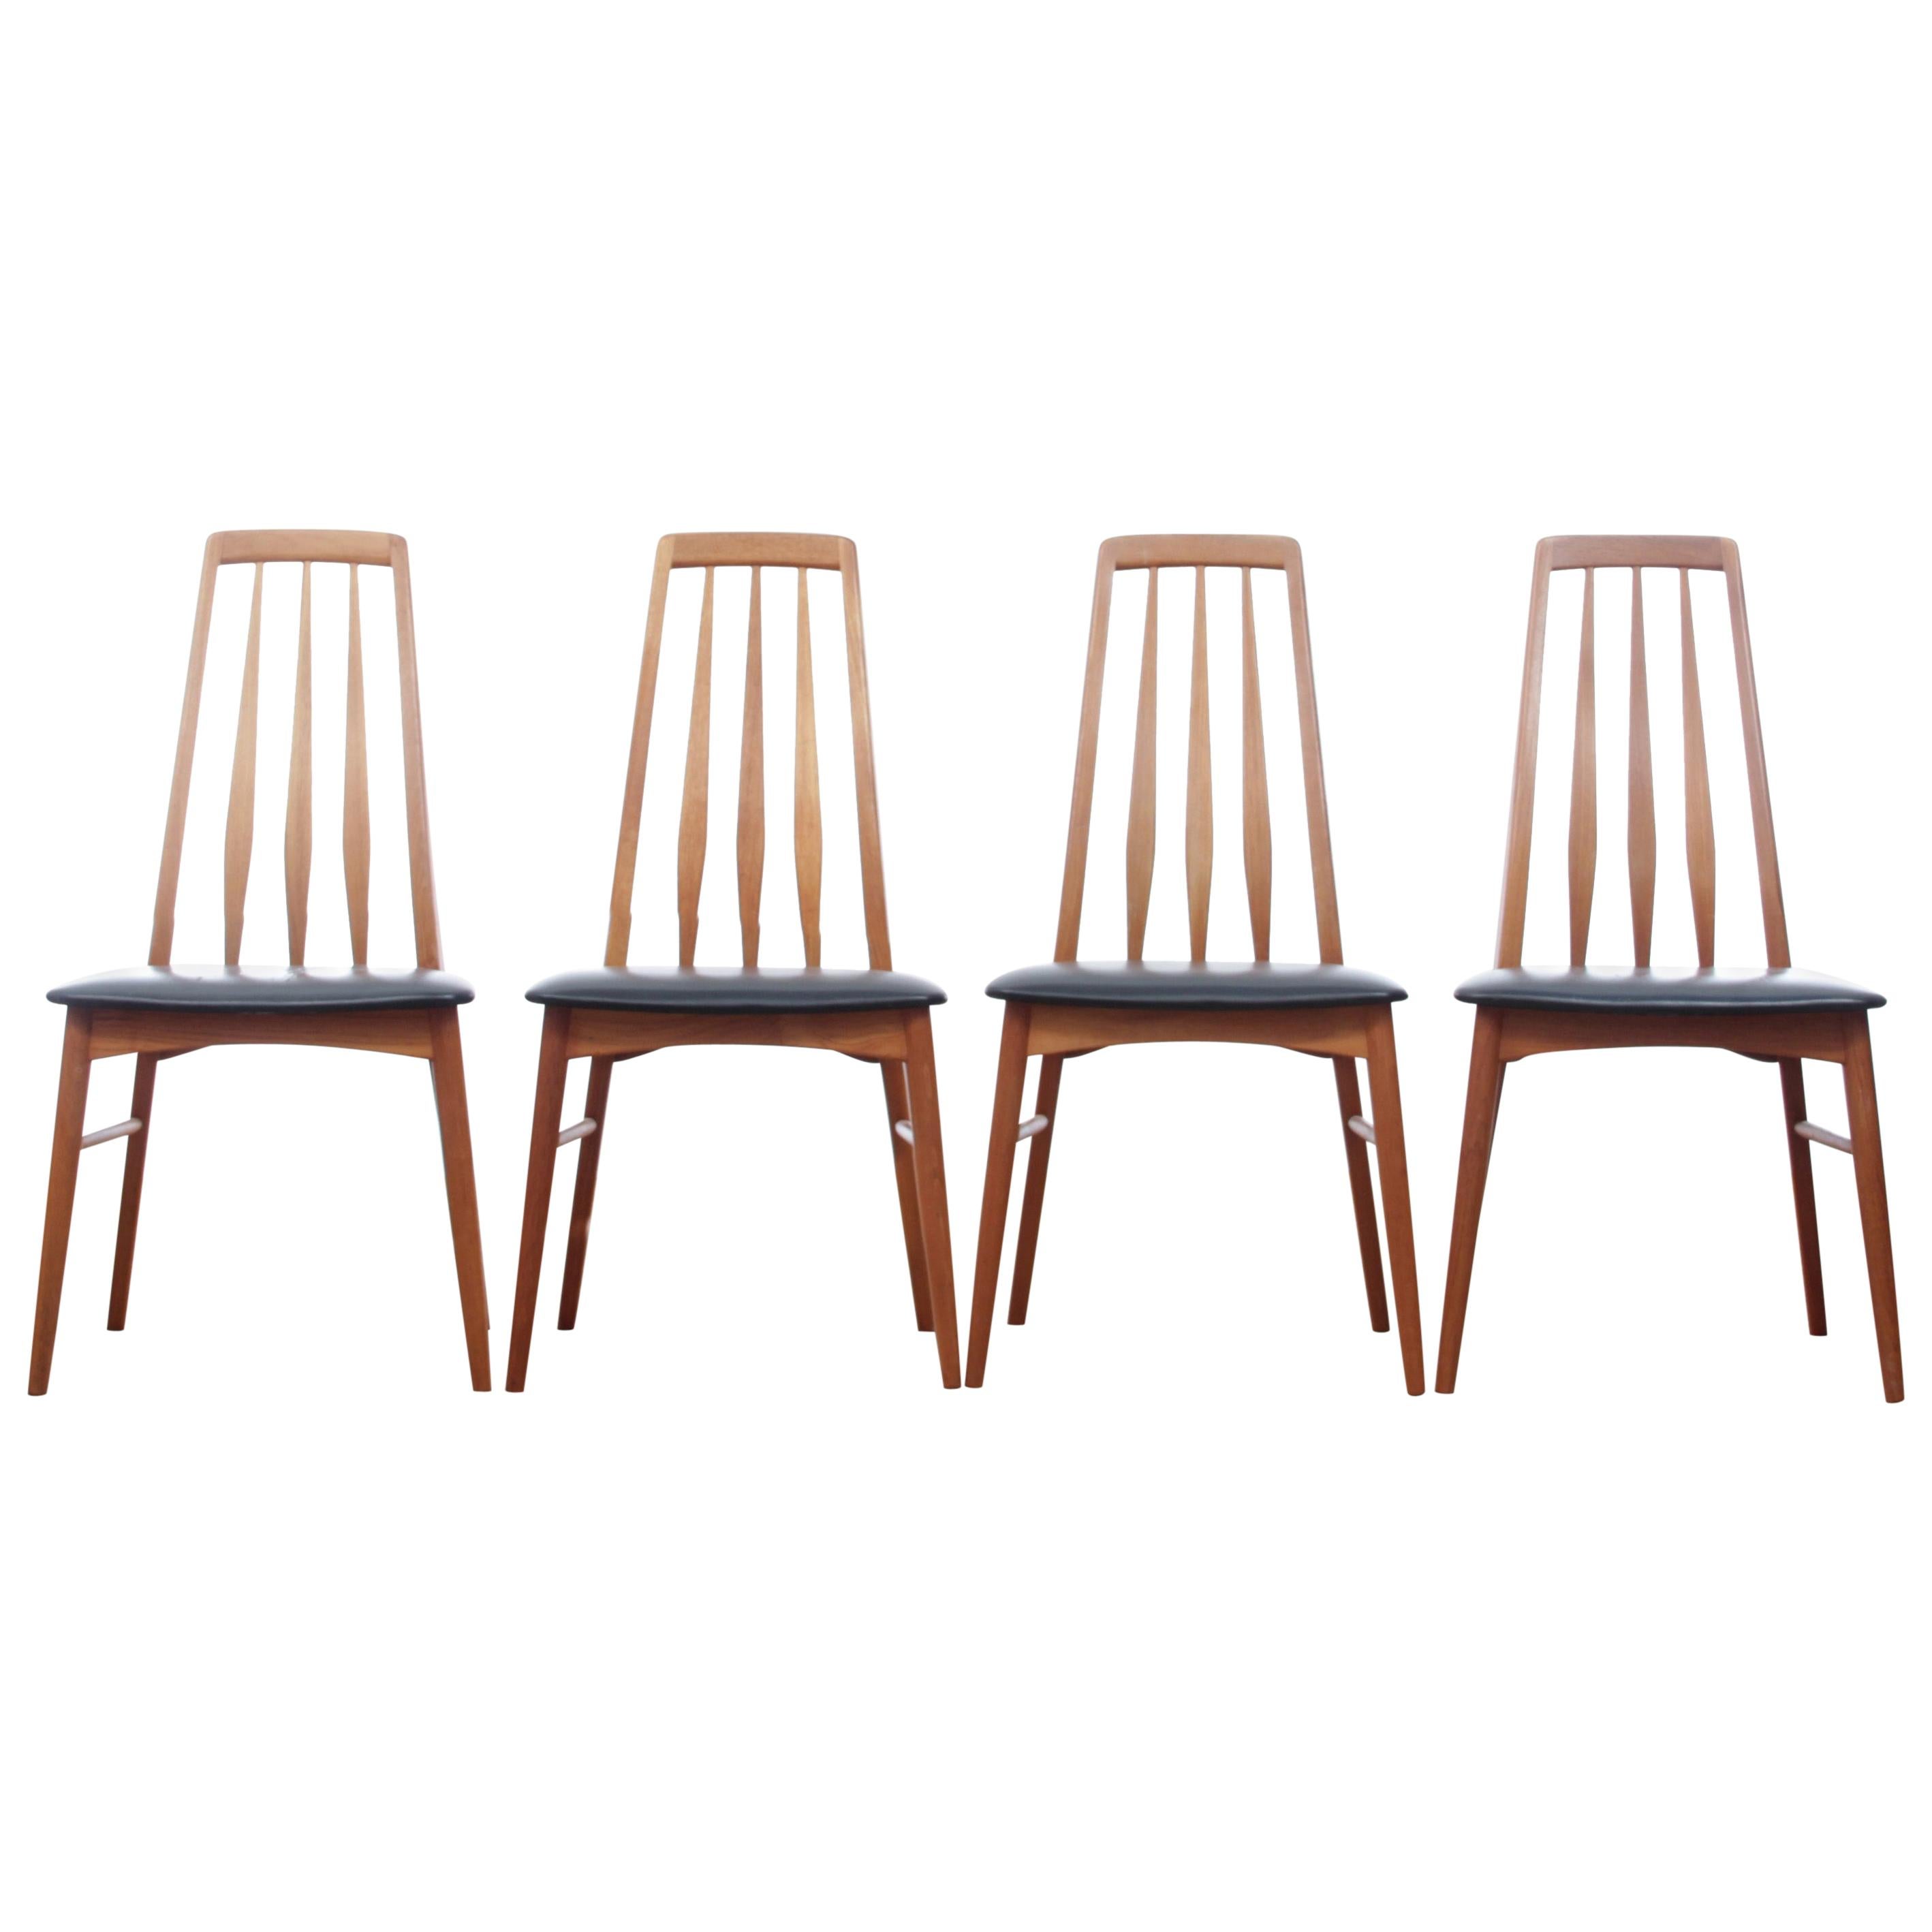 Mid-Century Modern Danish Set of 4 Chairs in Teak Model Eva by Niels Kofoed